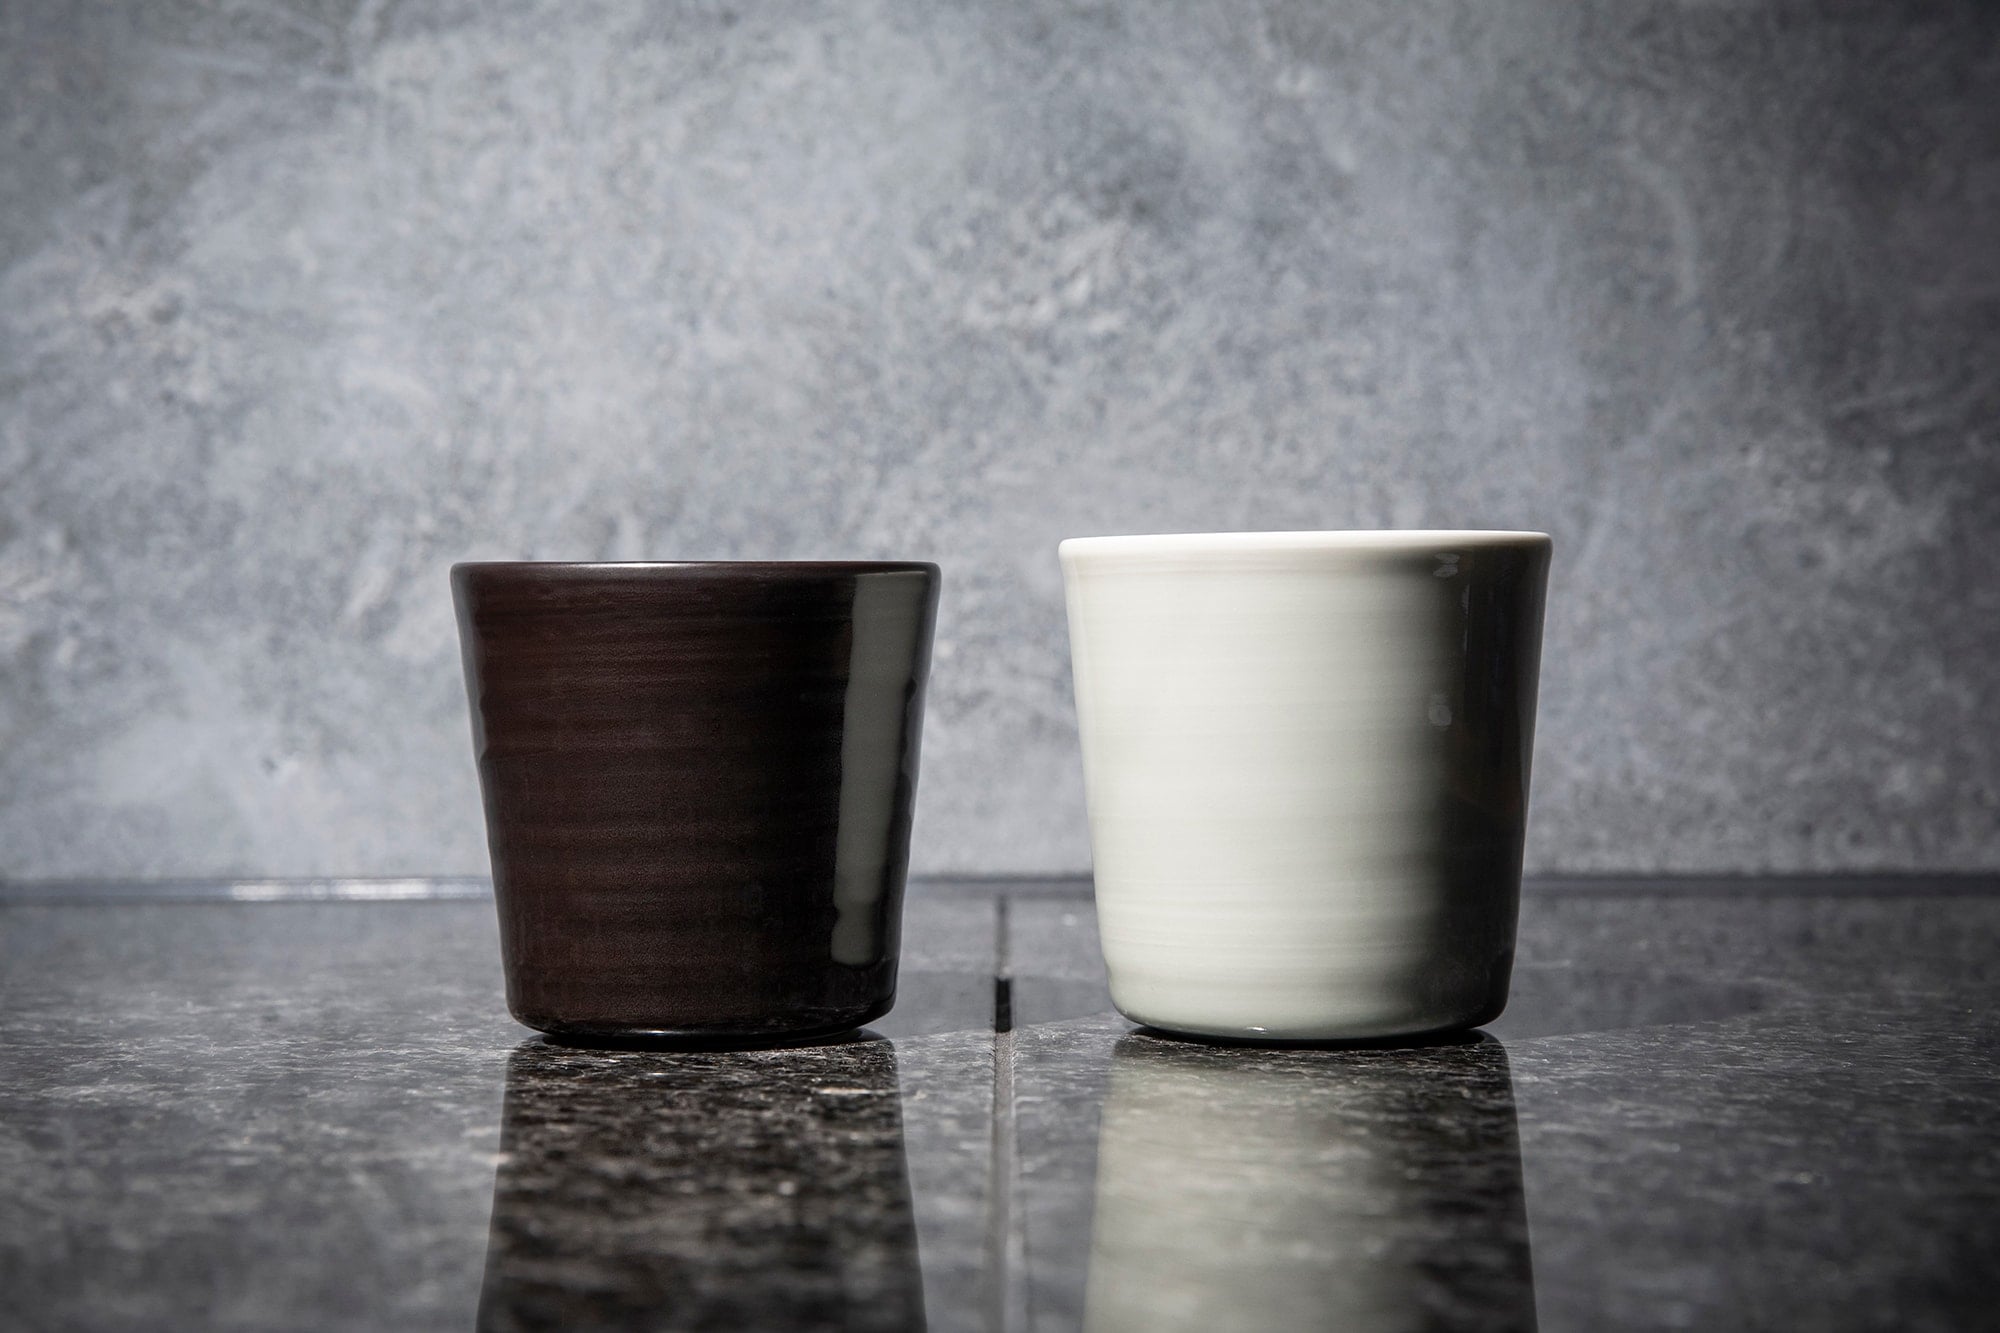 有田燒的窯場「香蘭社」與Ingegerd Eva Maria Råman合作製作的瓷器杯組。